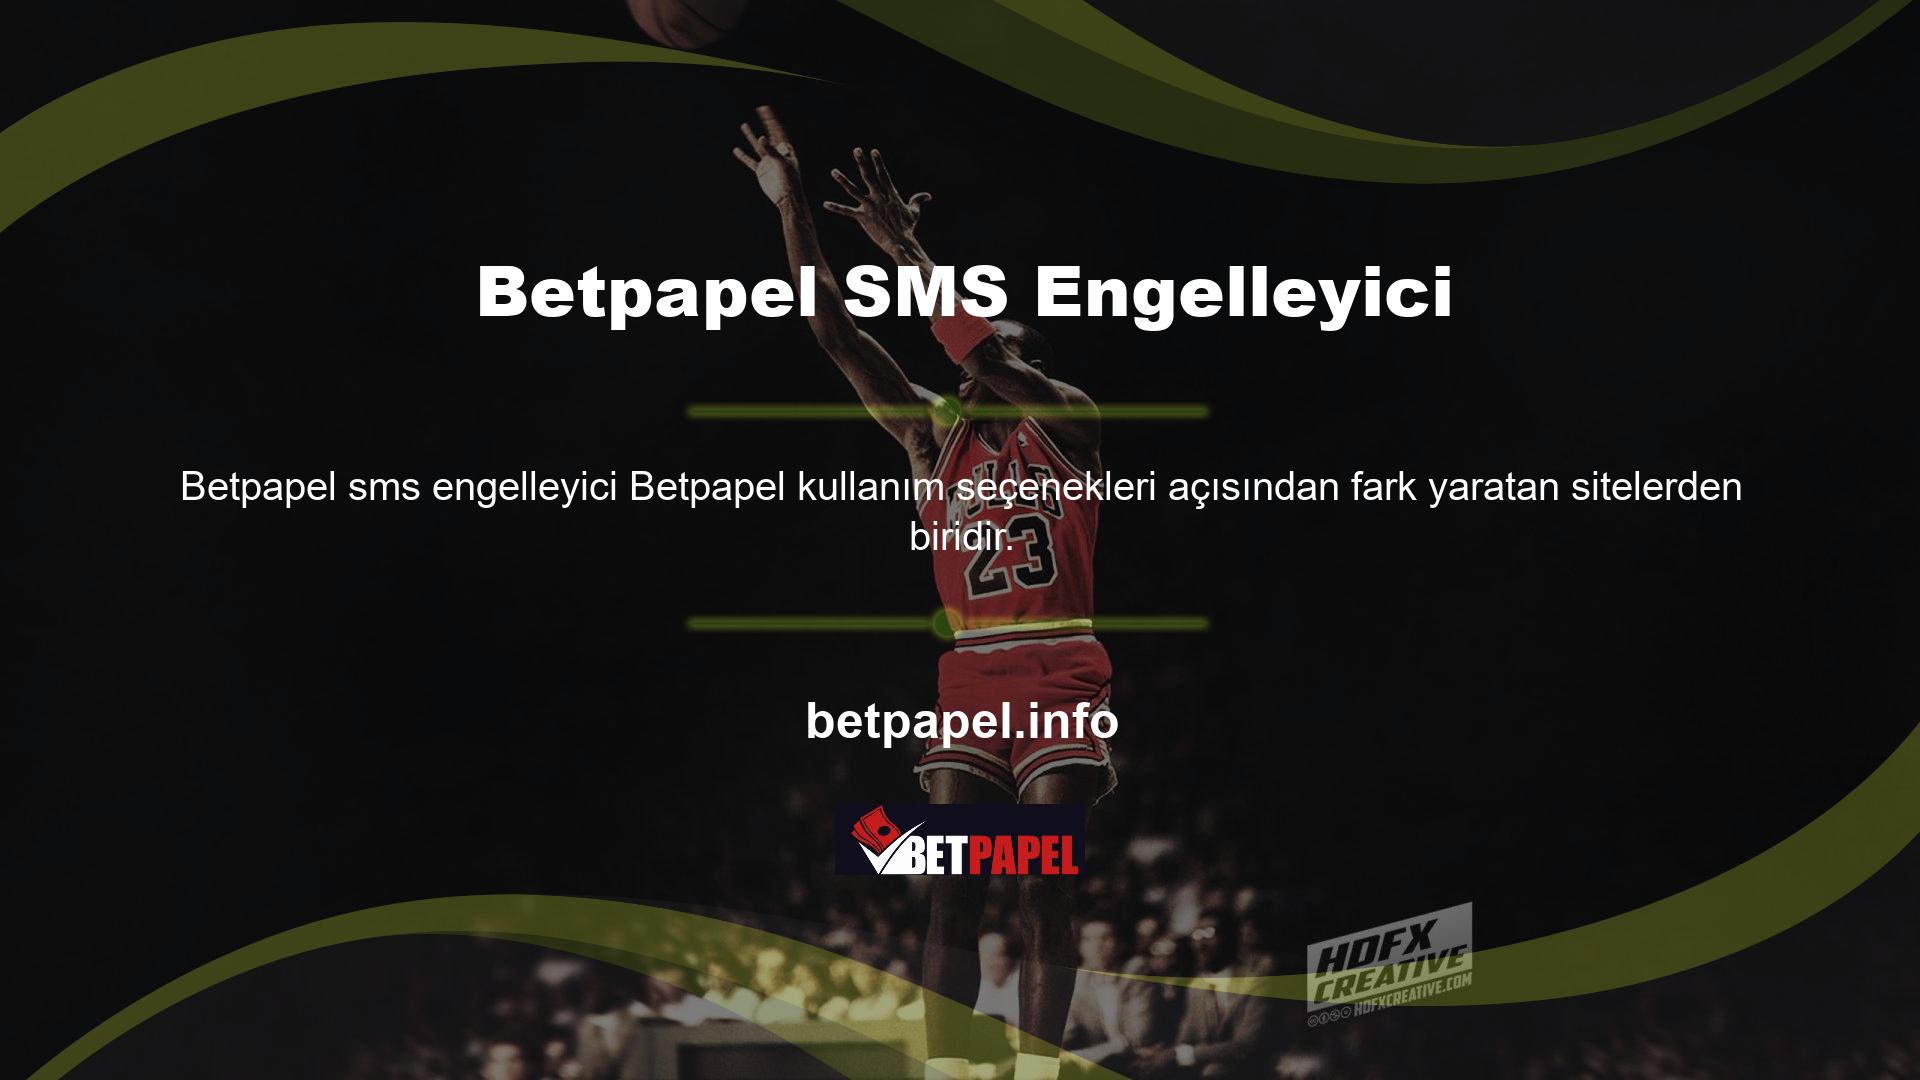 Bu web sitesine aynı zamanda Betpapel mobil uygulaması üzerinden de ulaşılabilmektedir